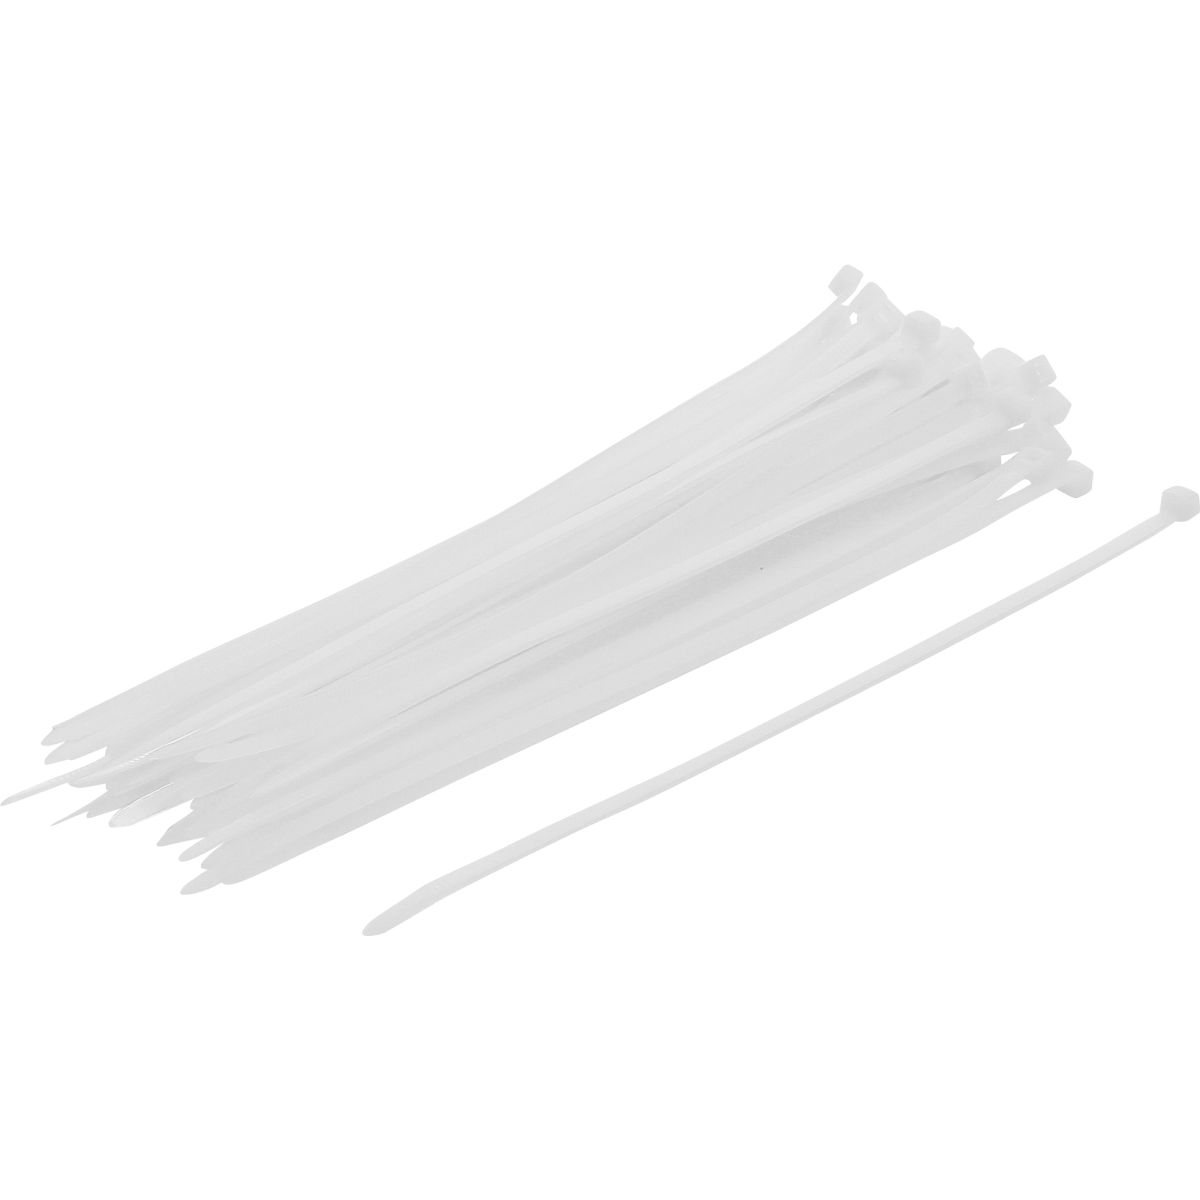 Assortiment de colliers plastique | blanc | 4,8 x 250 mm | 50 pièces